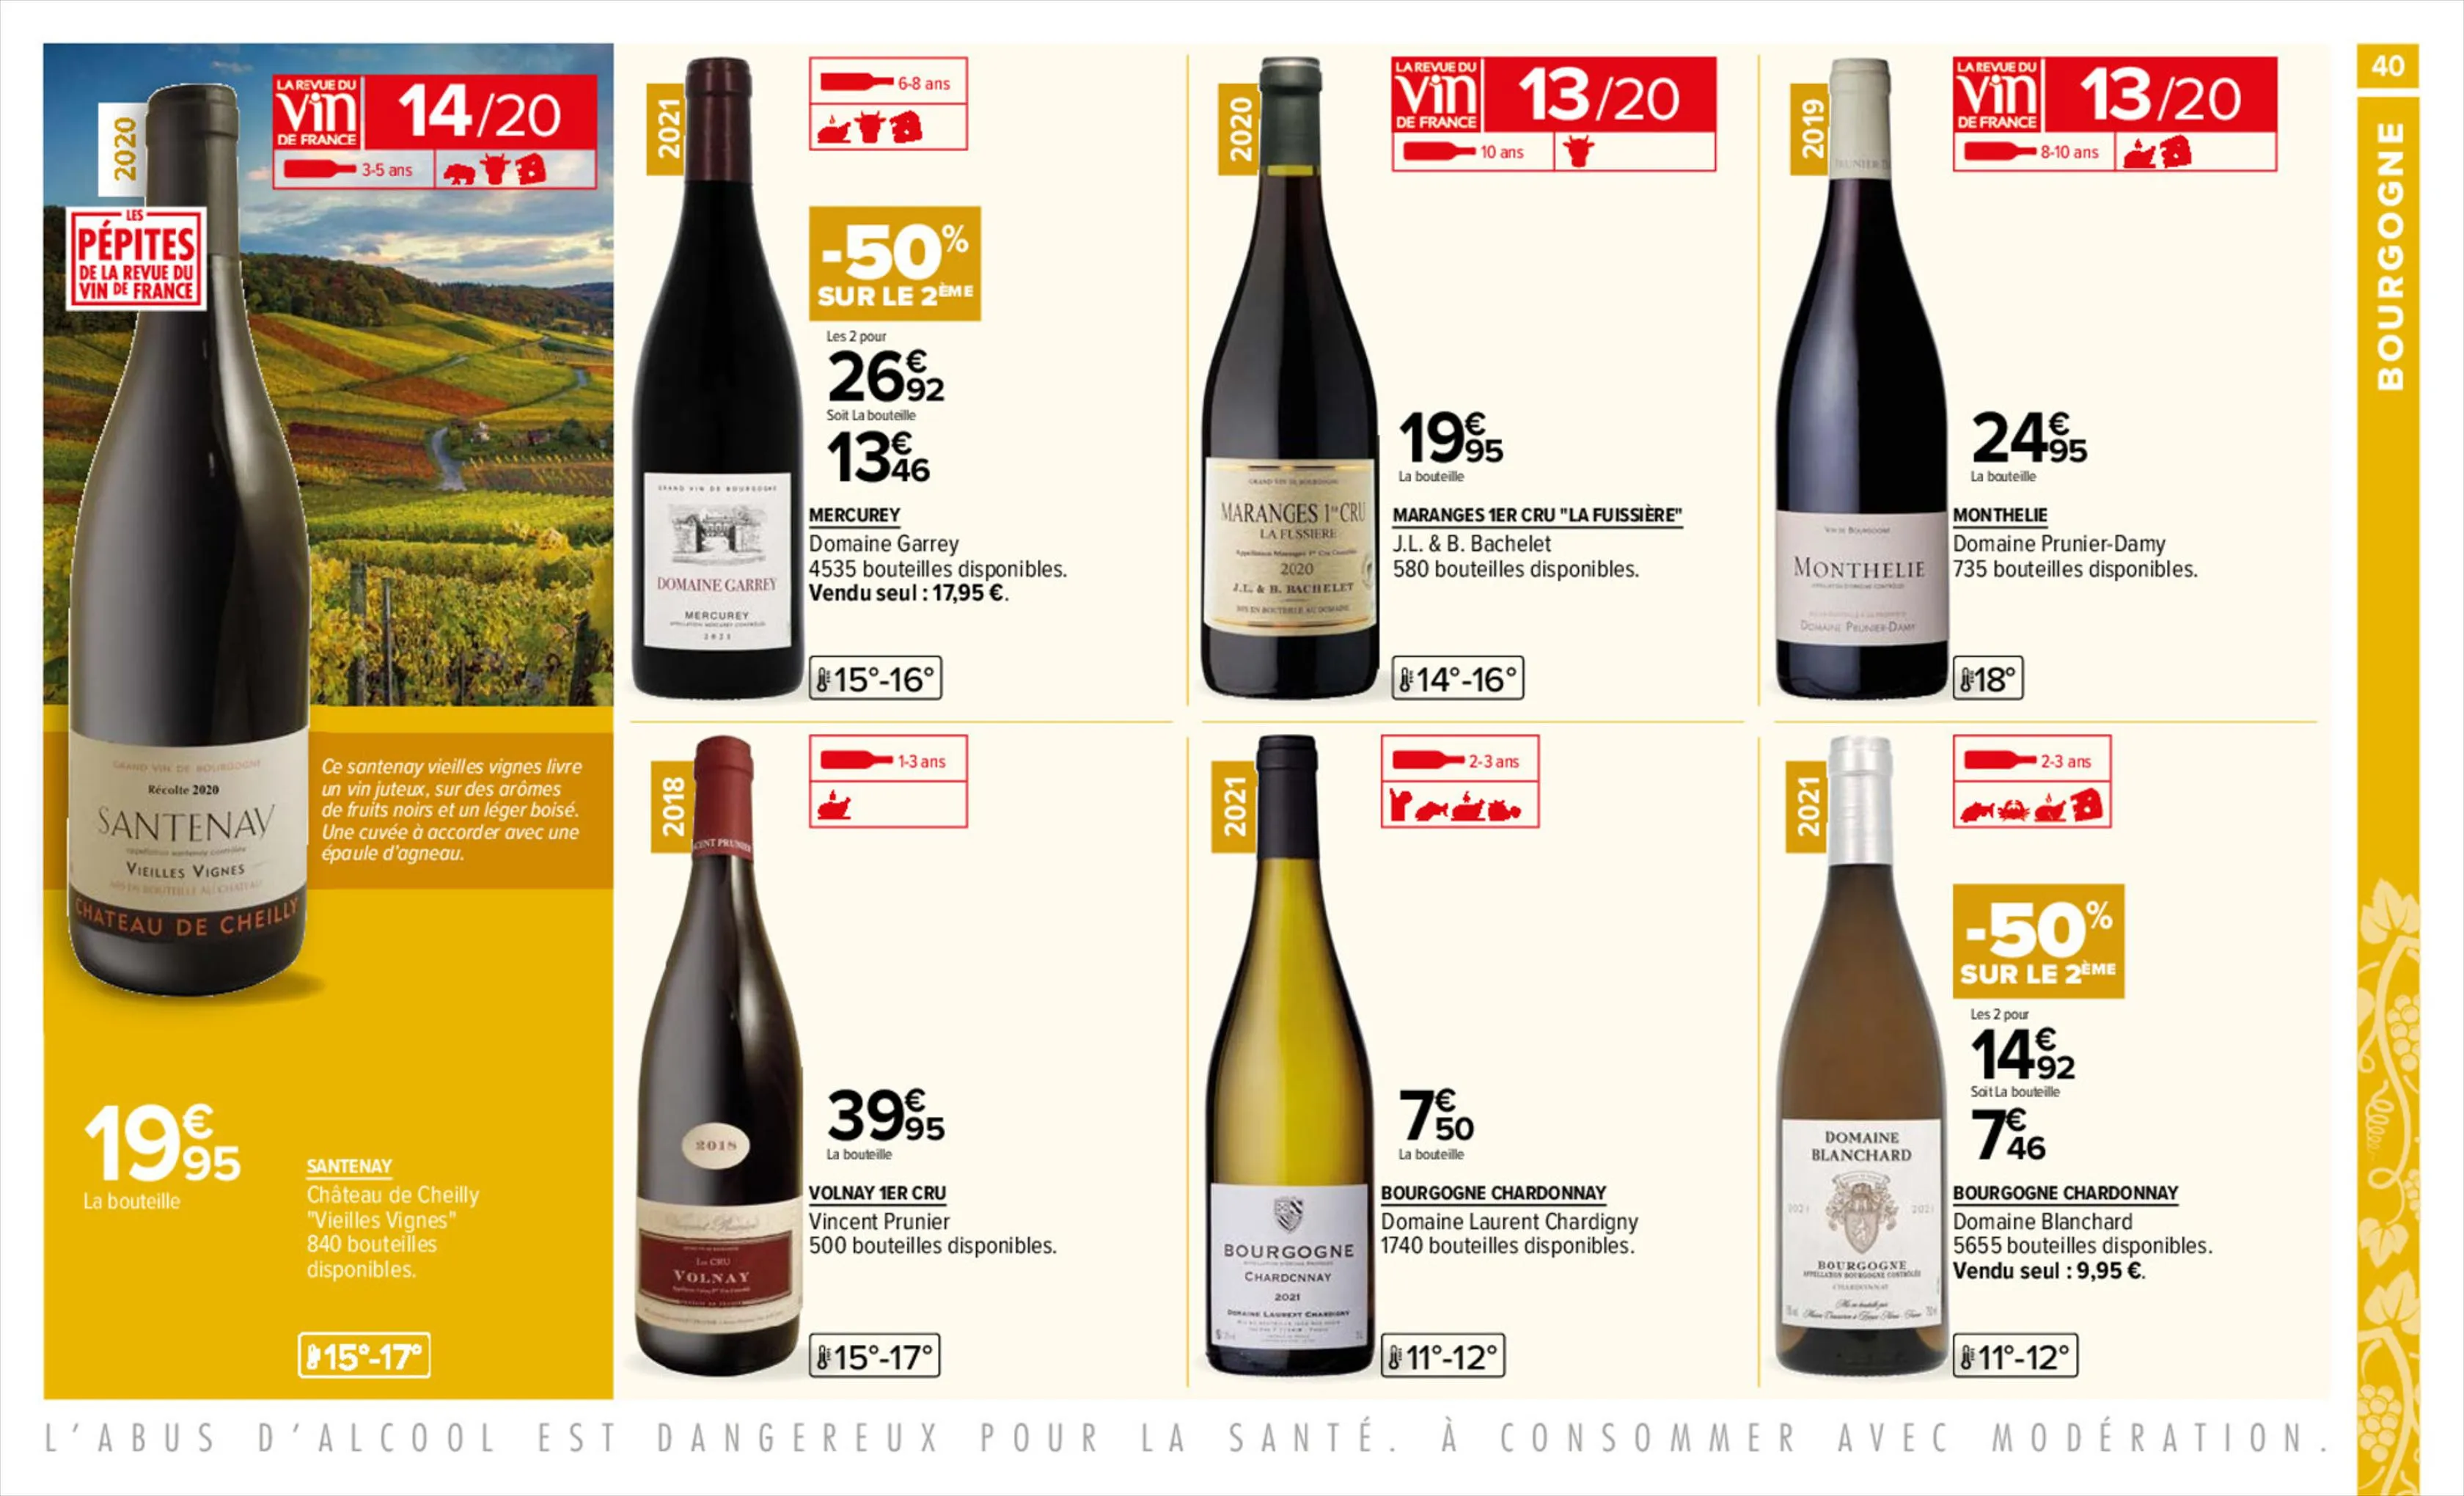 Catalogue Foire aux vins, page 00040